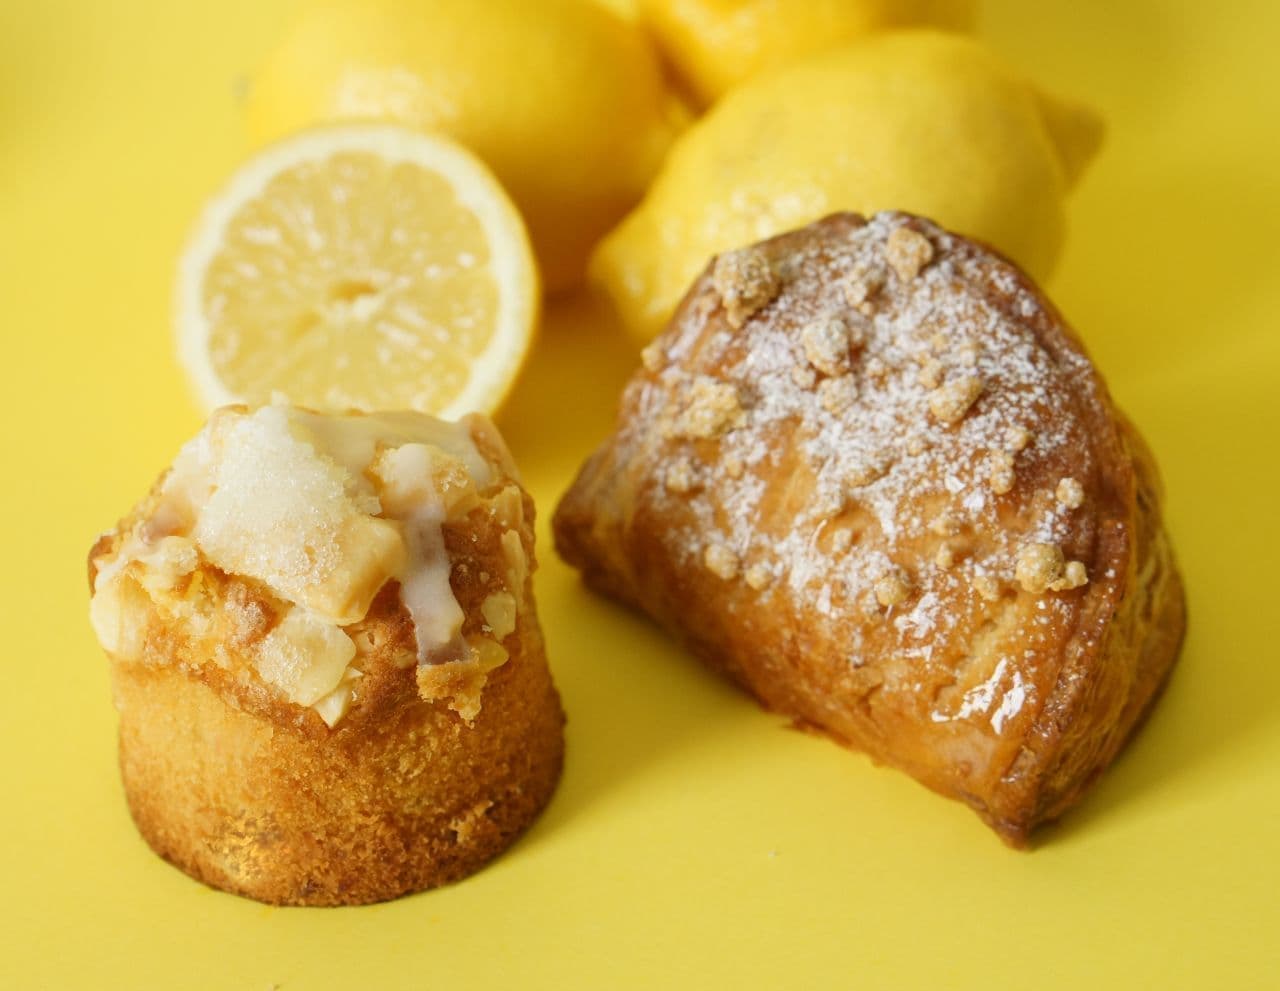 RINGO "Freshly Baked Custard Apple Pie Lemon" and "Lemon and Apple Pie Muffin